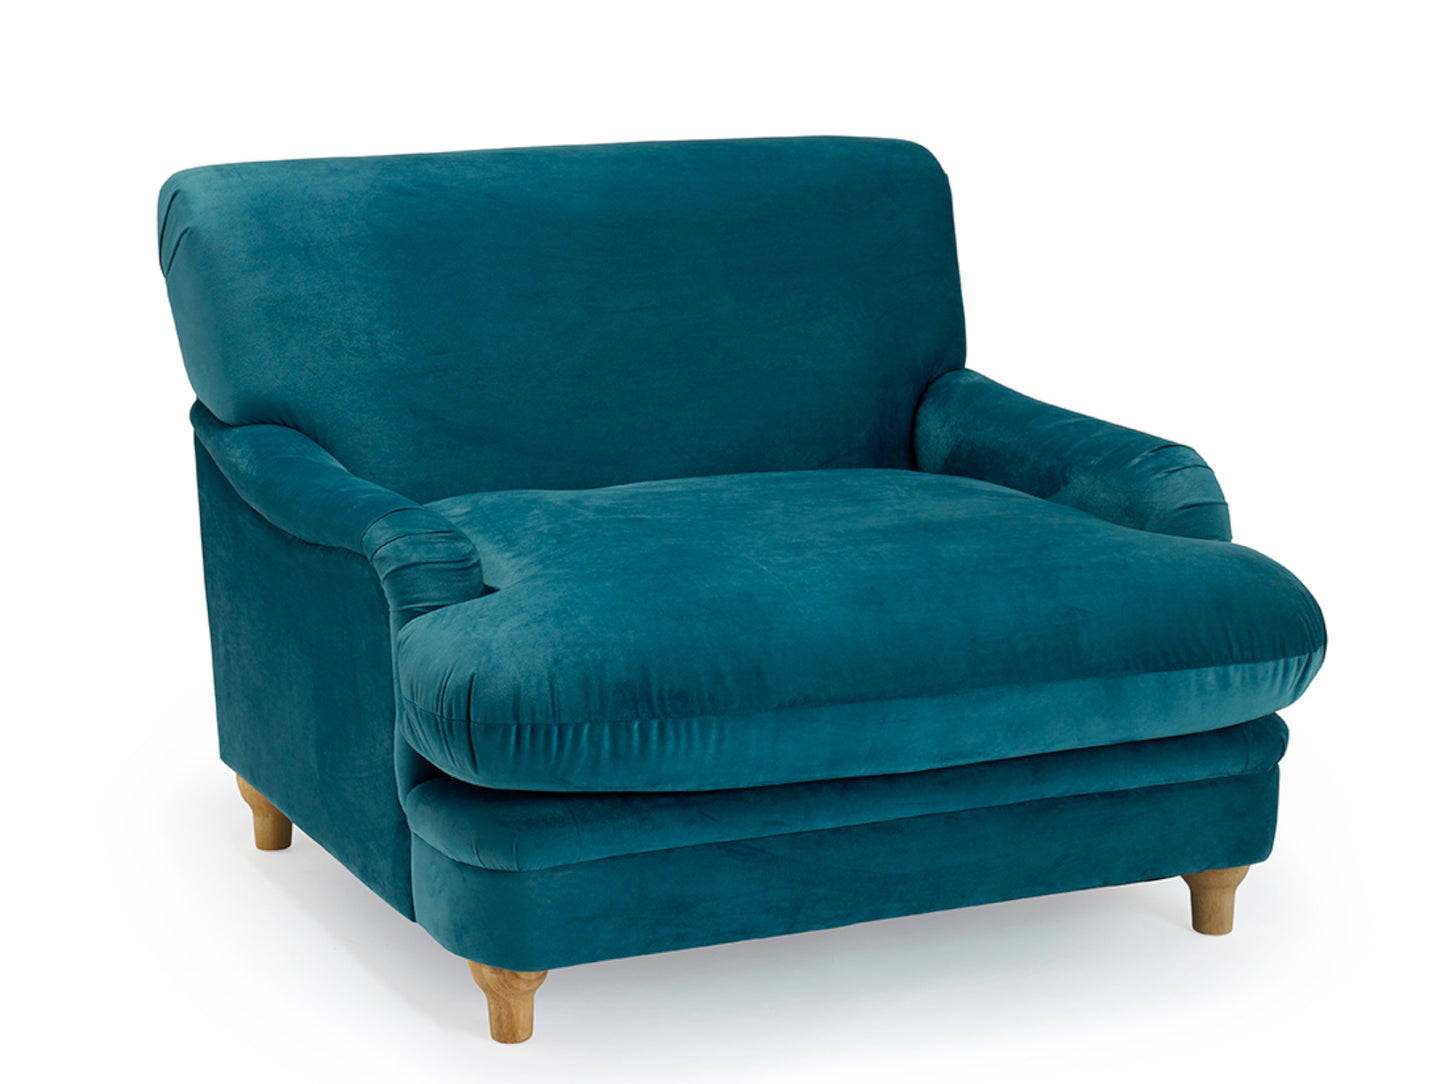 Plumpton Chair in Blue